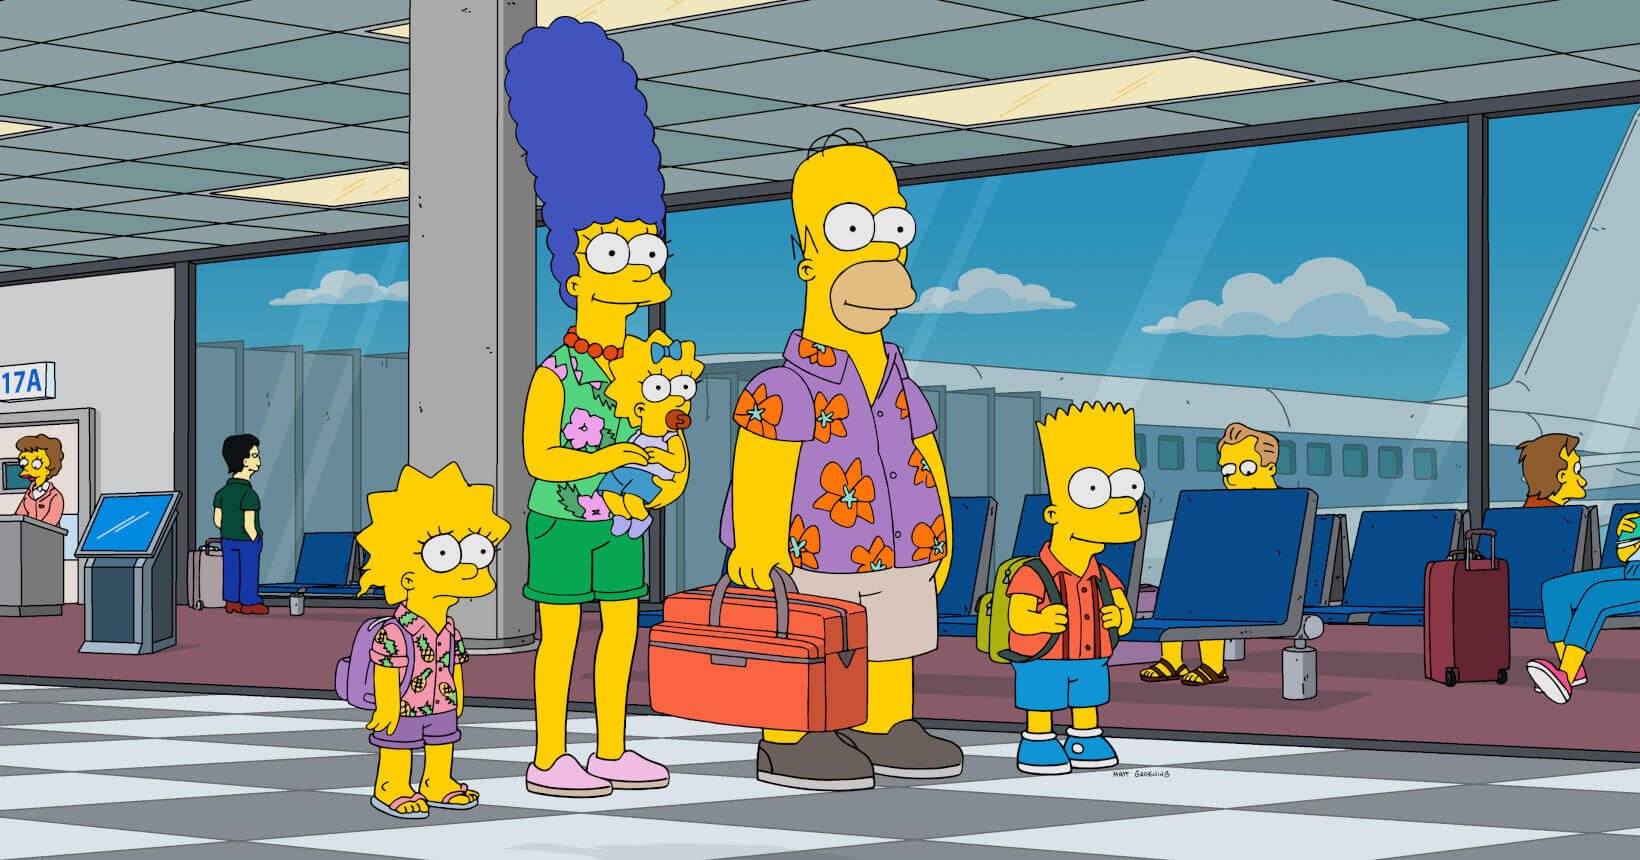 Os Simpsons esconde diversos detalhes e pormenores curiosos, que muitos fãs não percebem logo de cara.